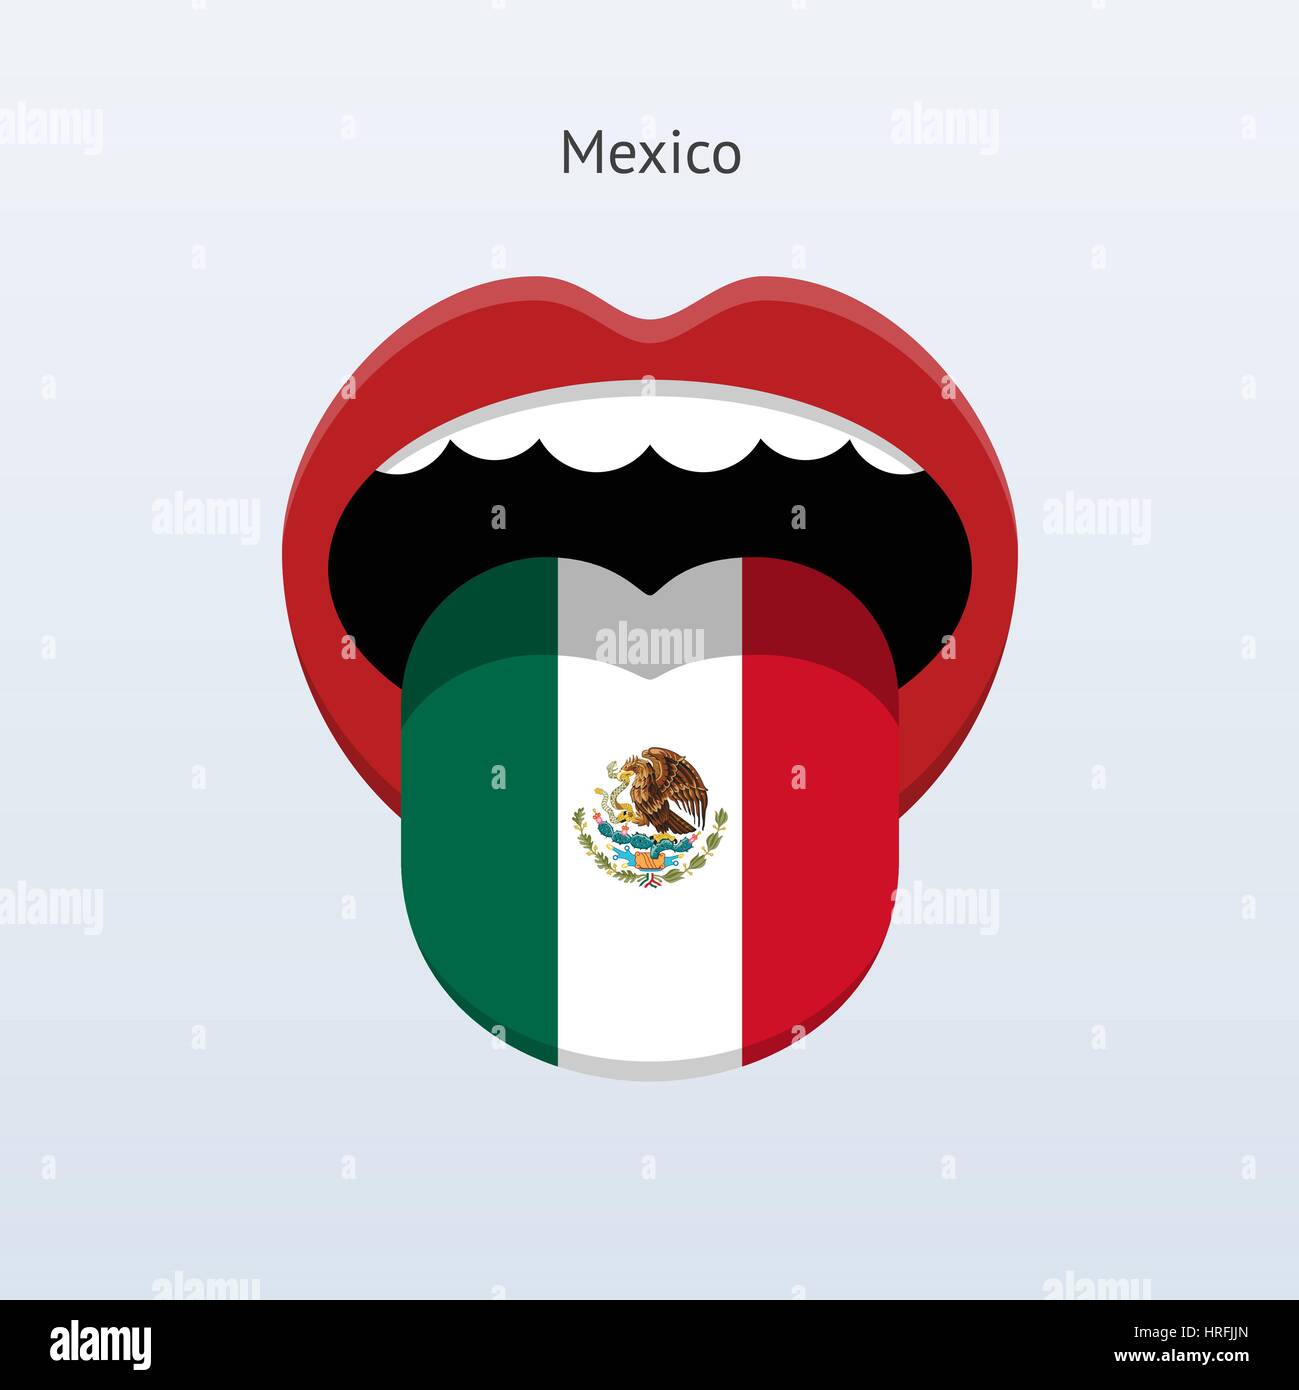 Государственным языком мексики является. Мексика язык. Мексиканский язык. Язык мексиканцев.